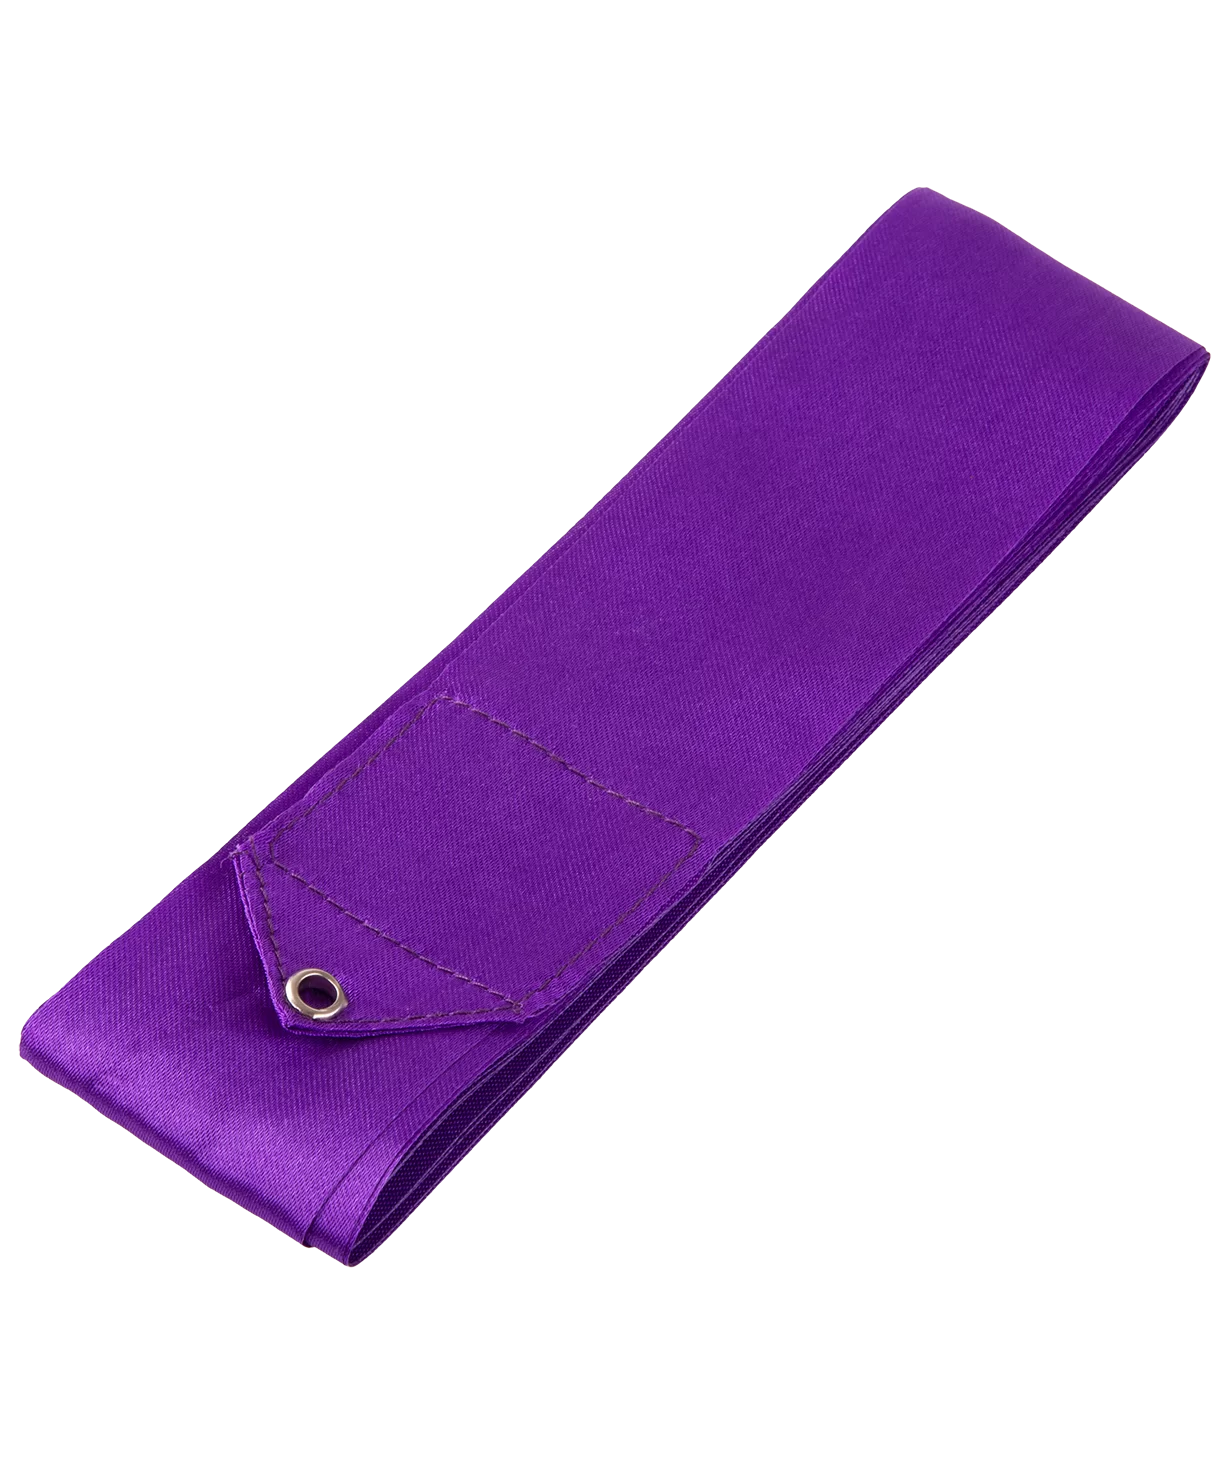 Реальное фото Лента для художественной гимнастики с палочкой 4 м Amely AGR-301 46 см фиолетовый УТ-00017646 от магазина СпортСЕ